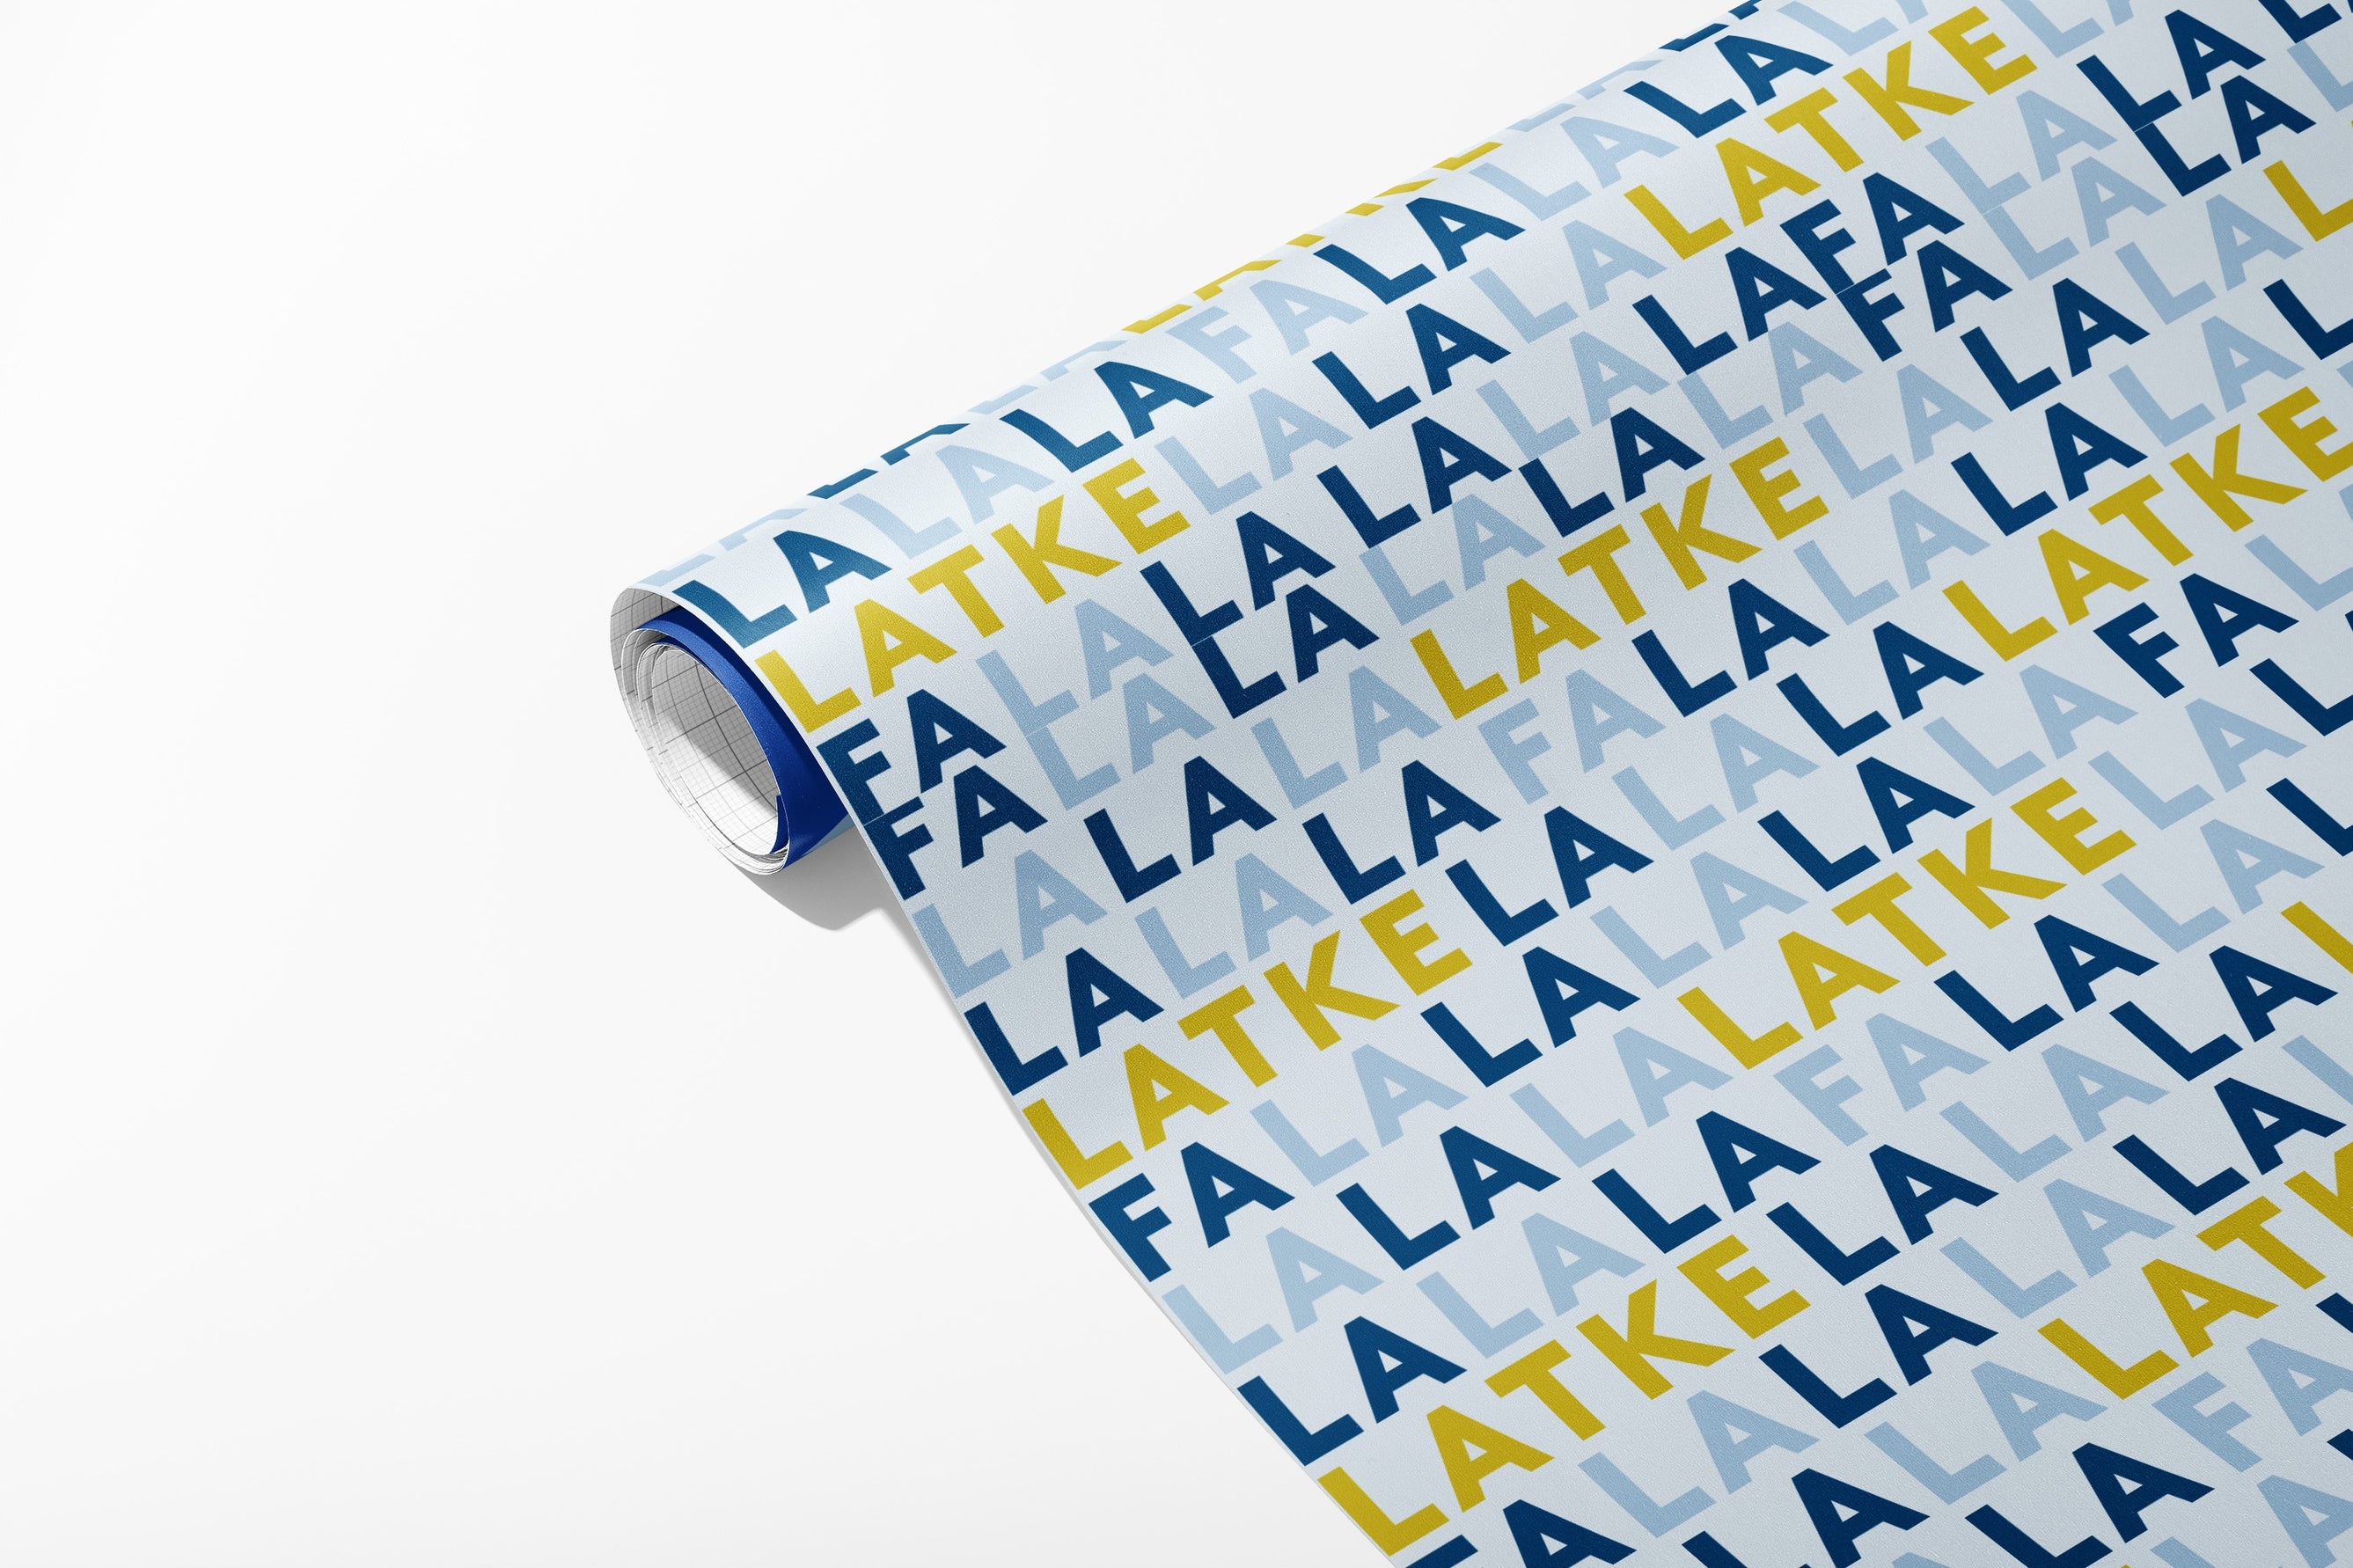 Fa La La La Latke Gift Wrap Sheets